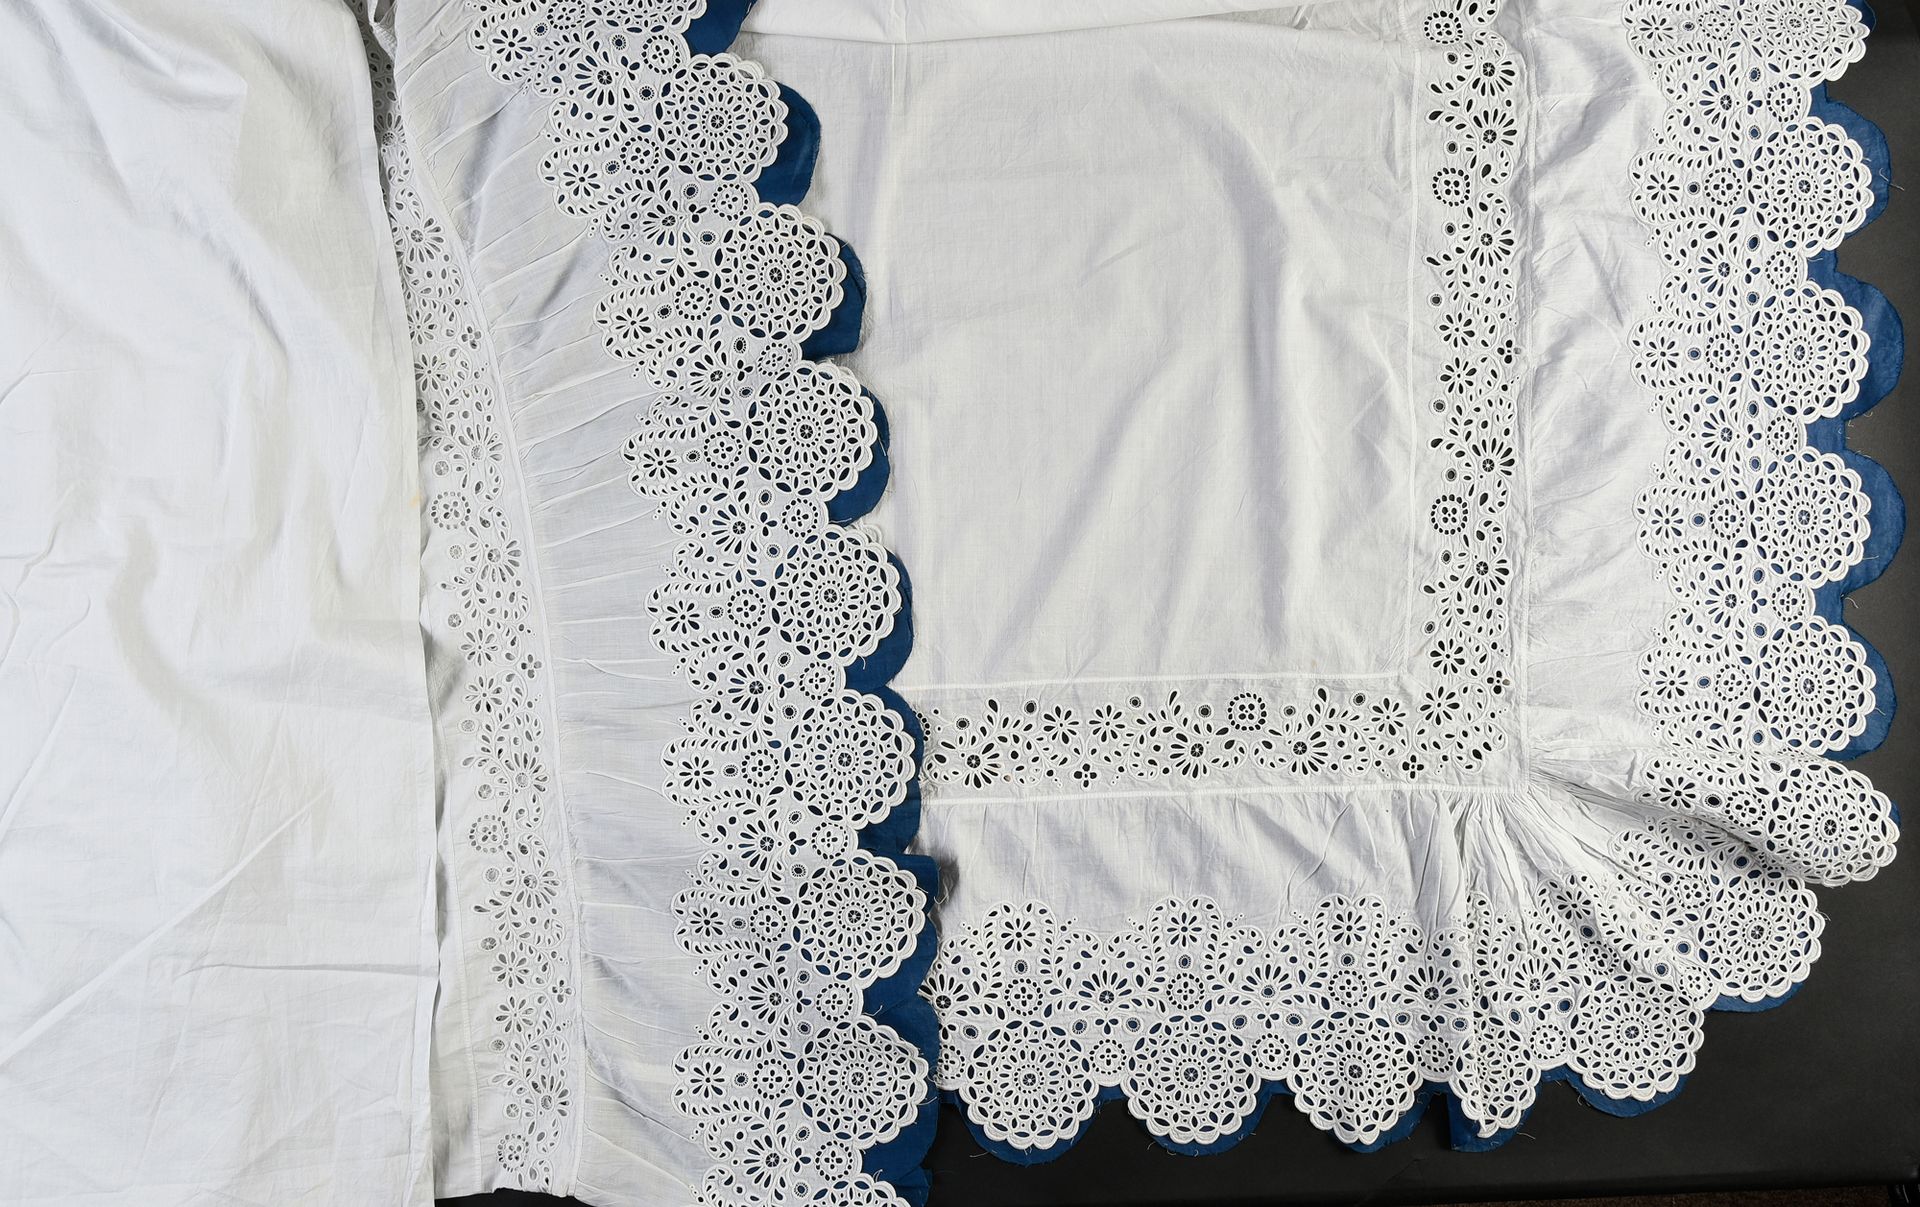 Null 孕妇床单和被套，英国刺绣，20世纪上半叶。
上等亚麻布的床单和被套，装饰着一个转折点和一个大的褶皱，用紧密的针线绣着同样的花纹，褶皱由海军蓝釉棉布支撑&hellip;